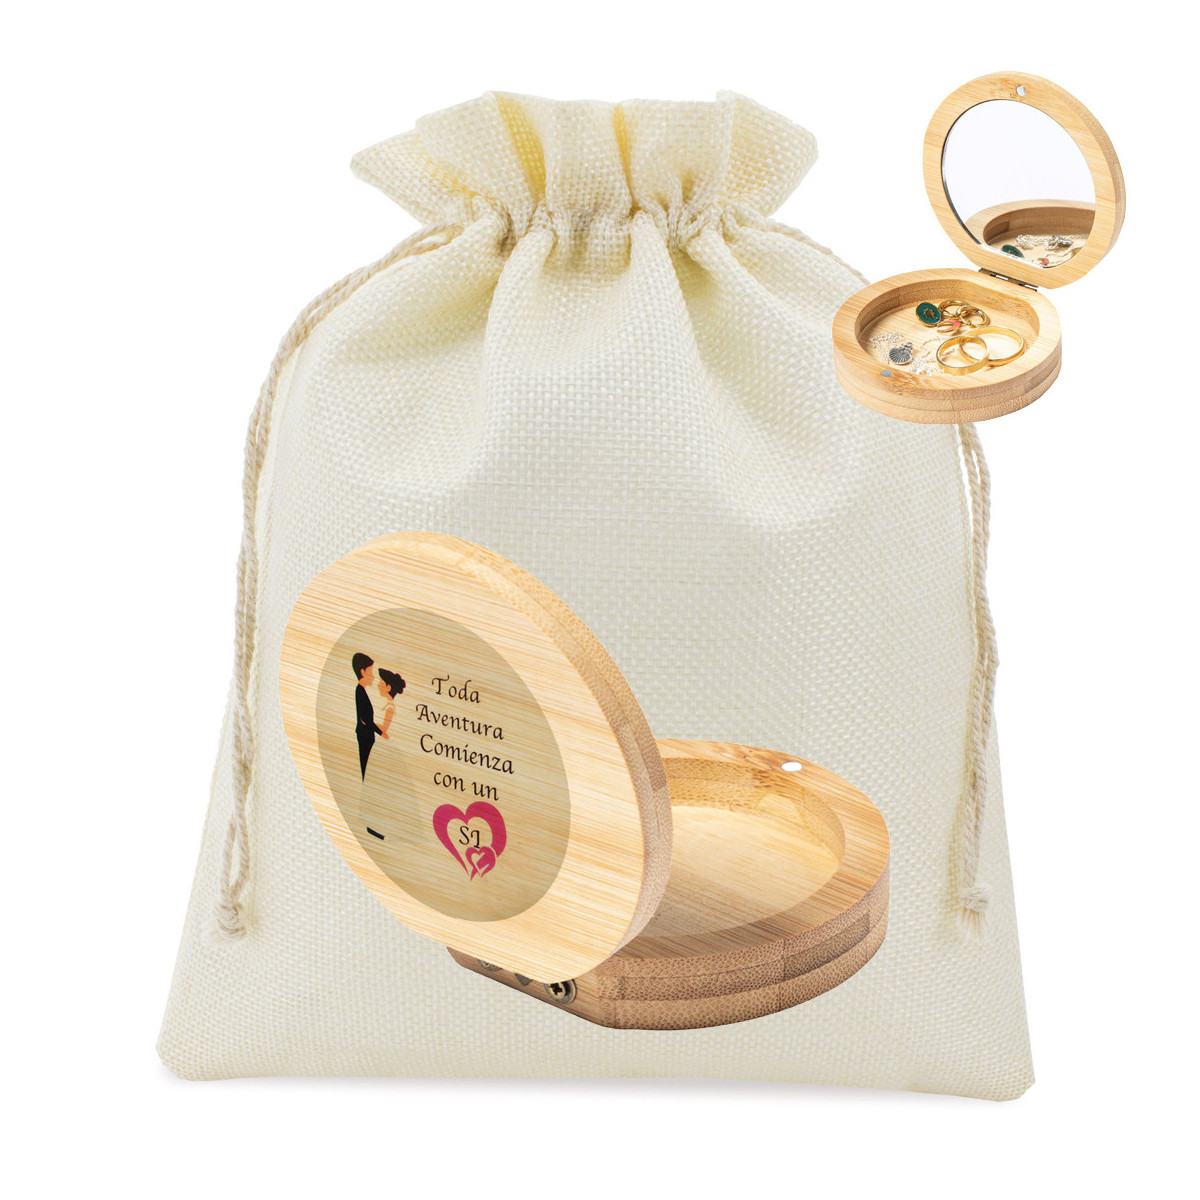 Joyero de madera con espejo presentado en bolsa rústica y adhesivo de bodas